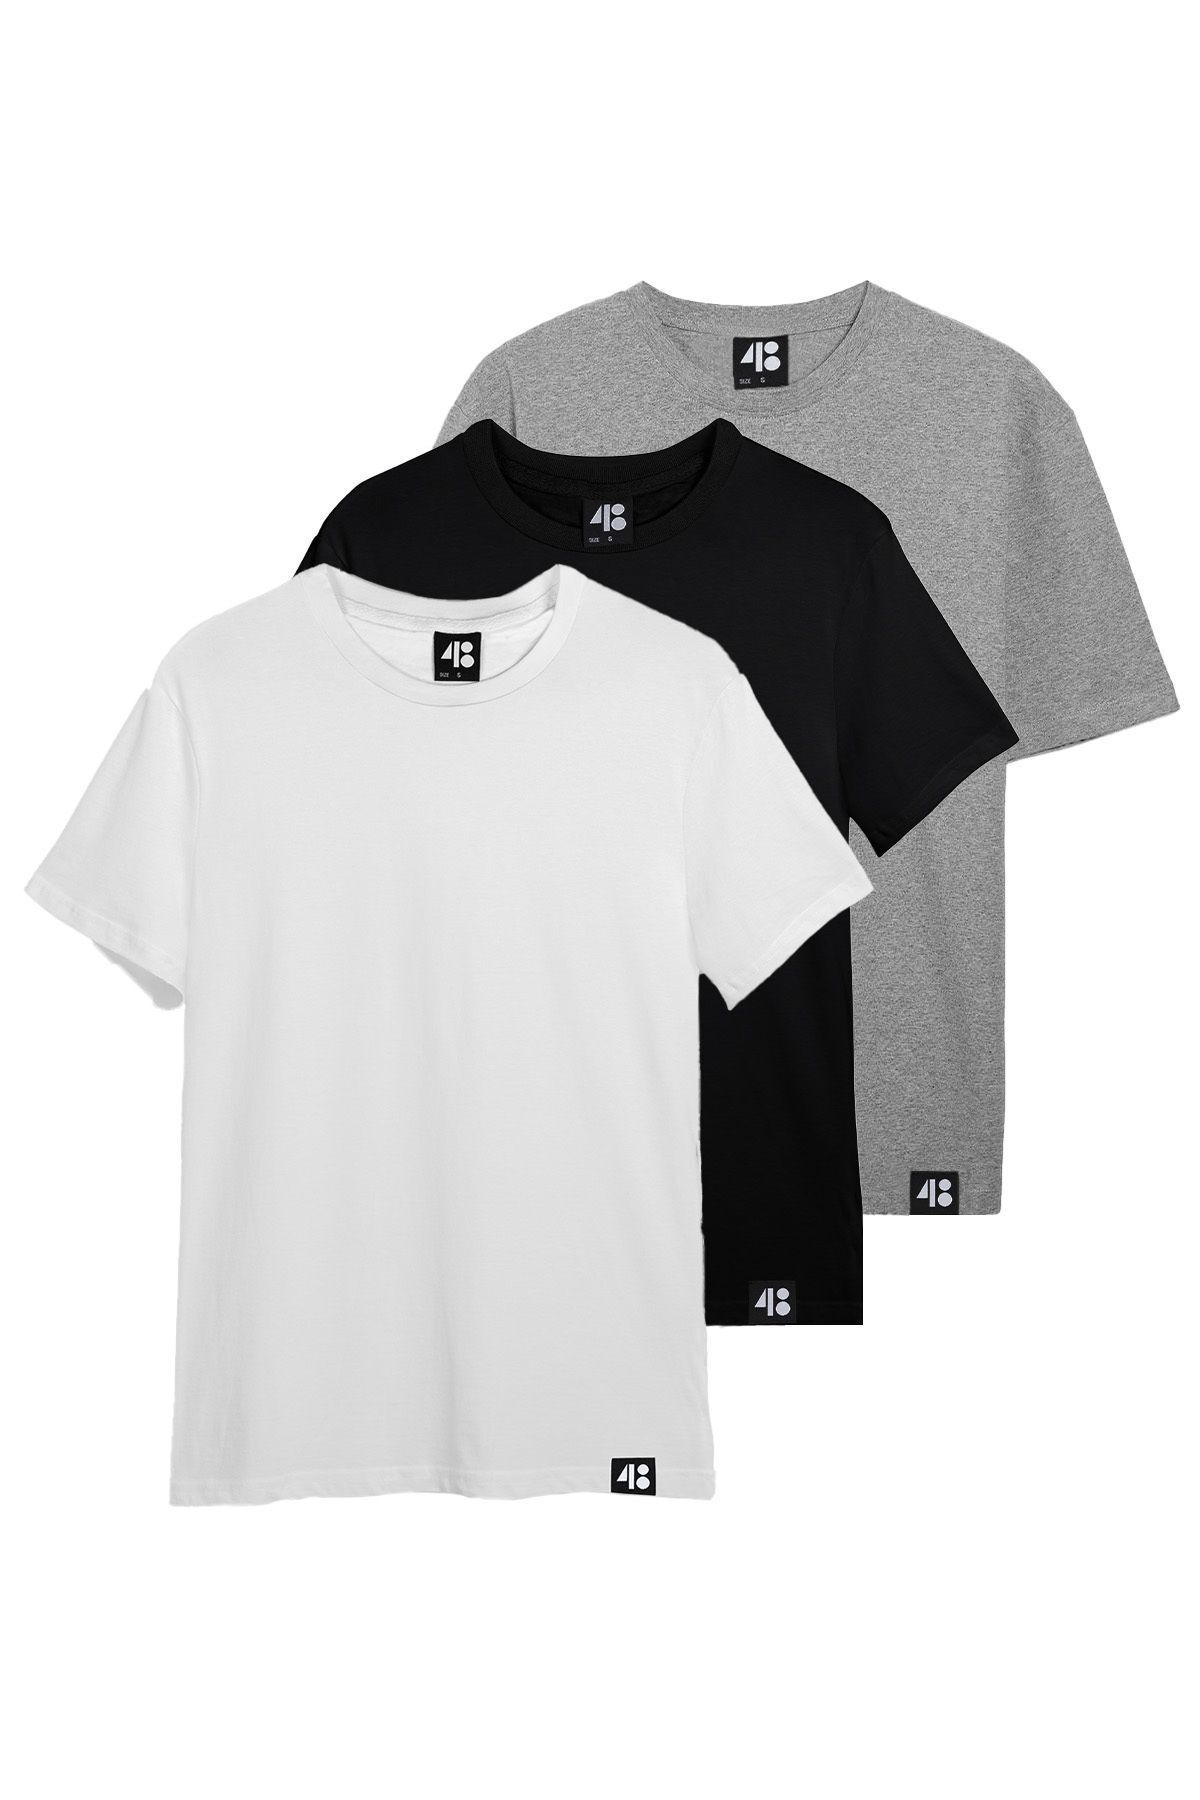 4&B Cultivated Regular Unisex T-Shirt / Siyah - Beyaz - Gri 3'lü T-Shirt Paketi